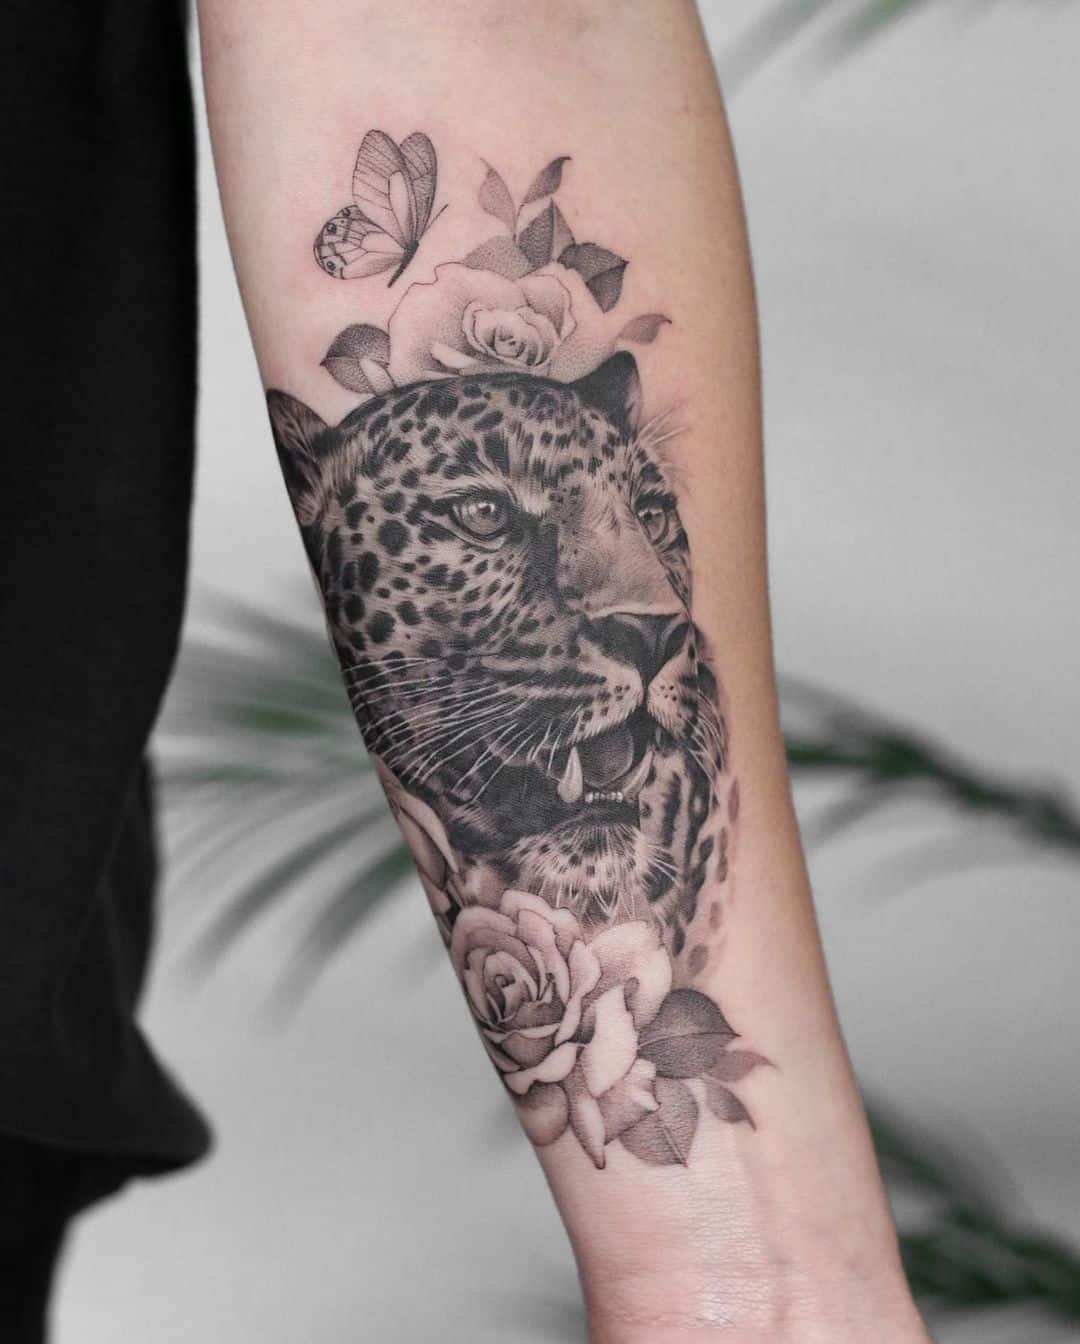 Roaring leopard tattoo by kyla rose tattoo